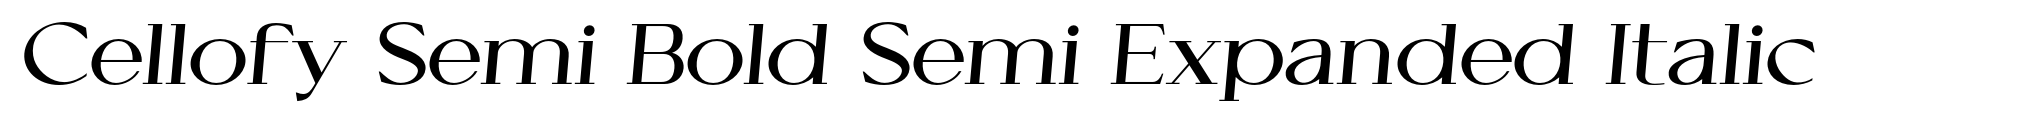 Cellofy Semi Bold Semi Expanded Italic image